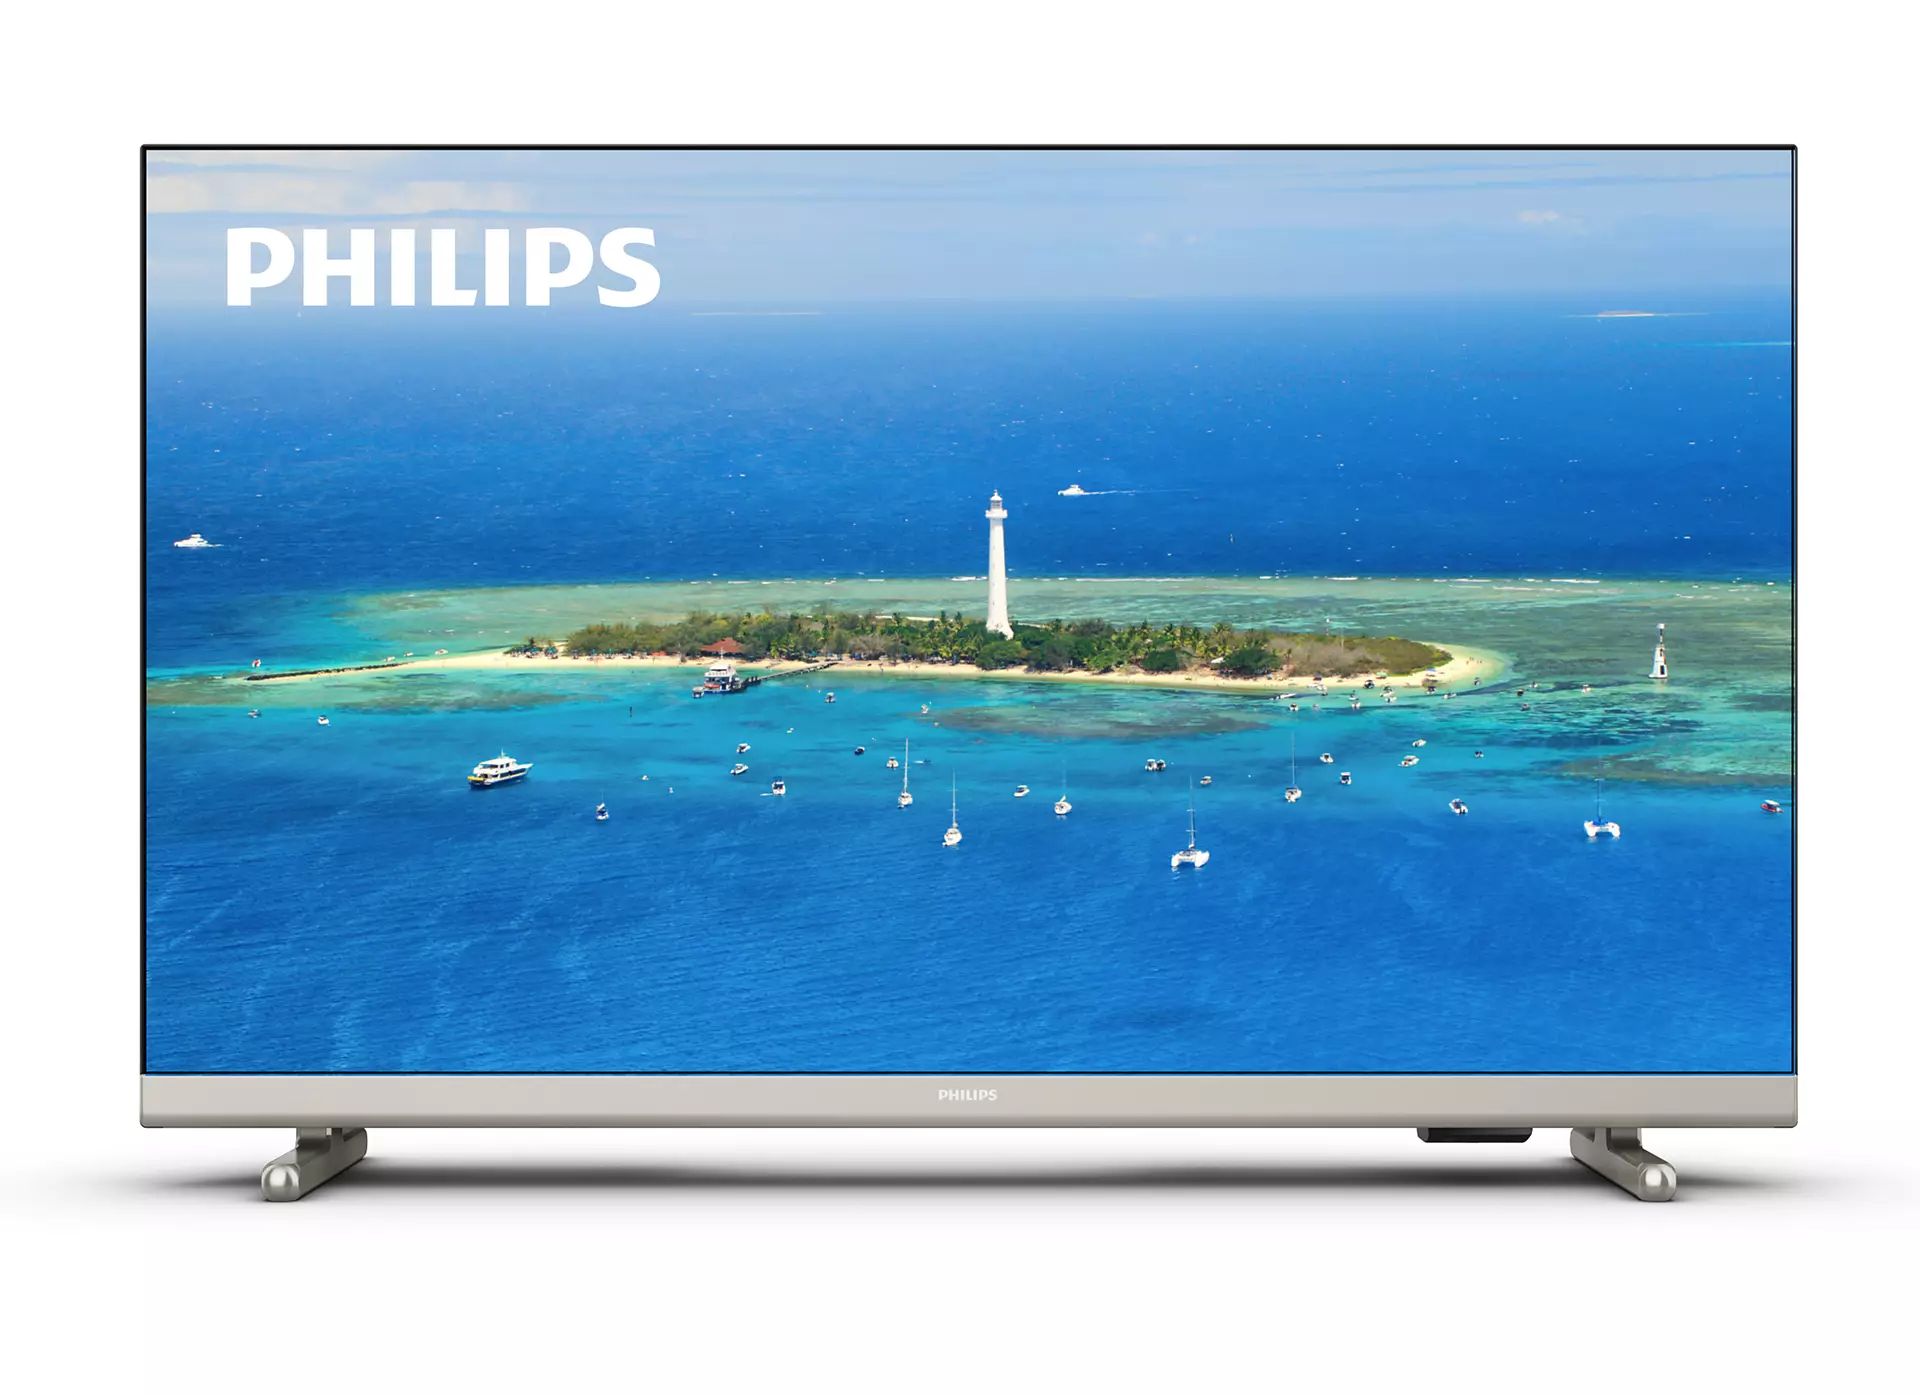 Philips 5500 series 32PHS5527/12 TV